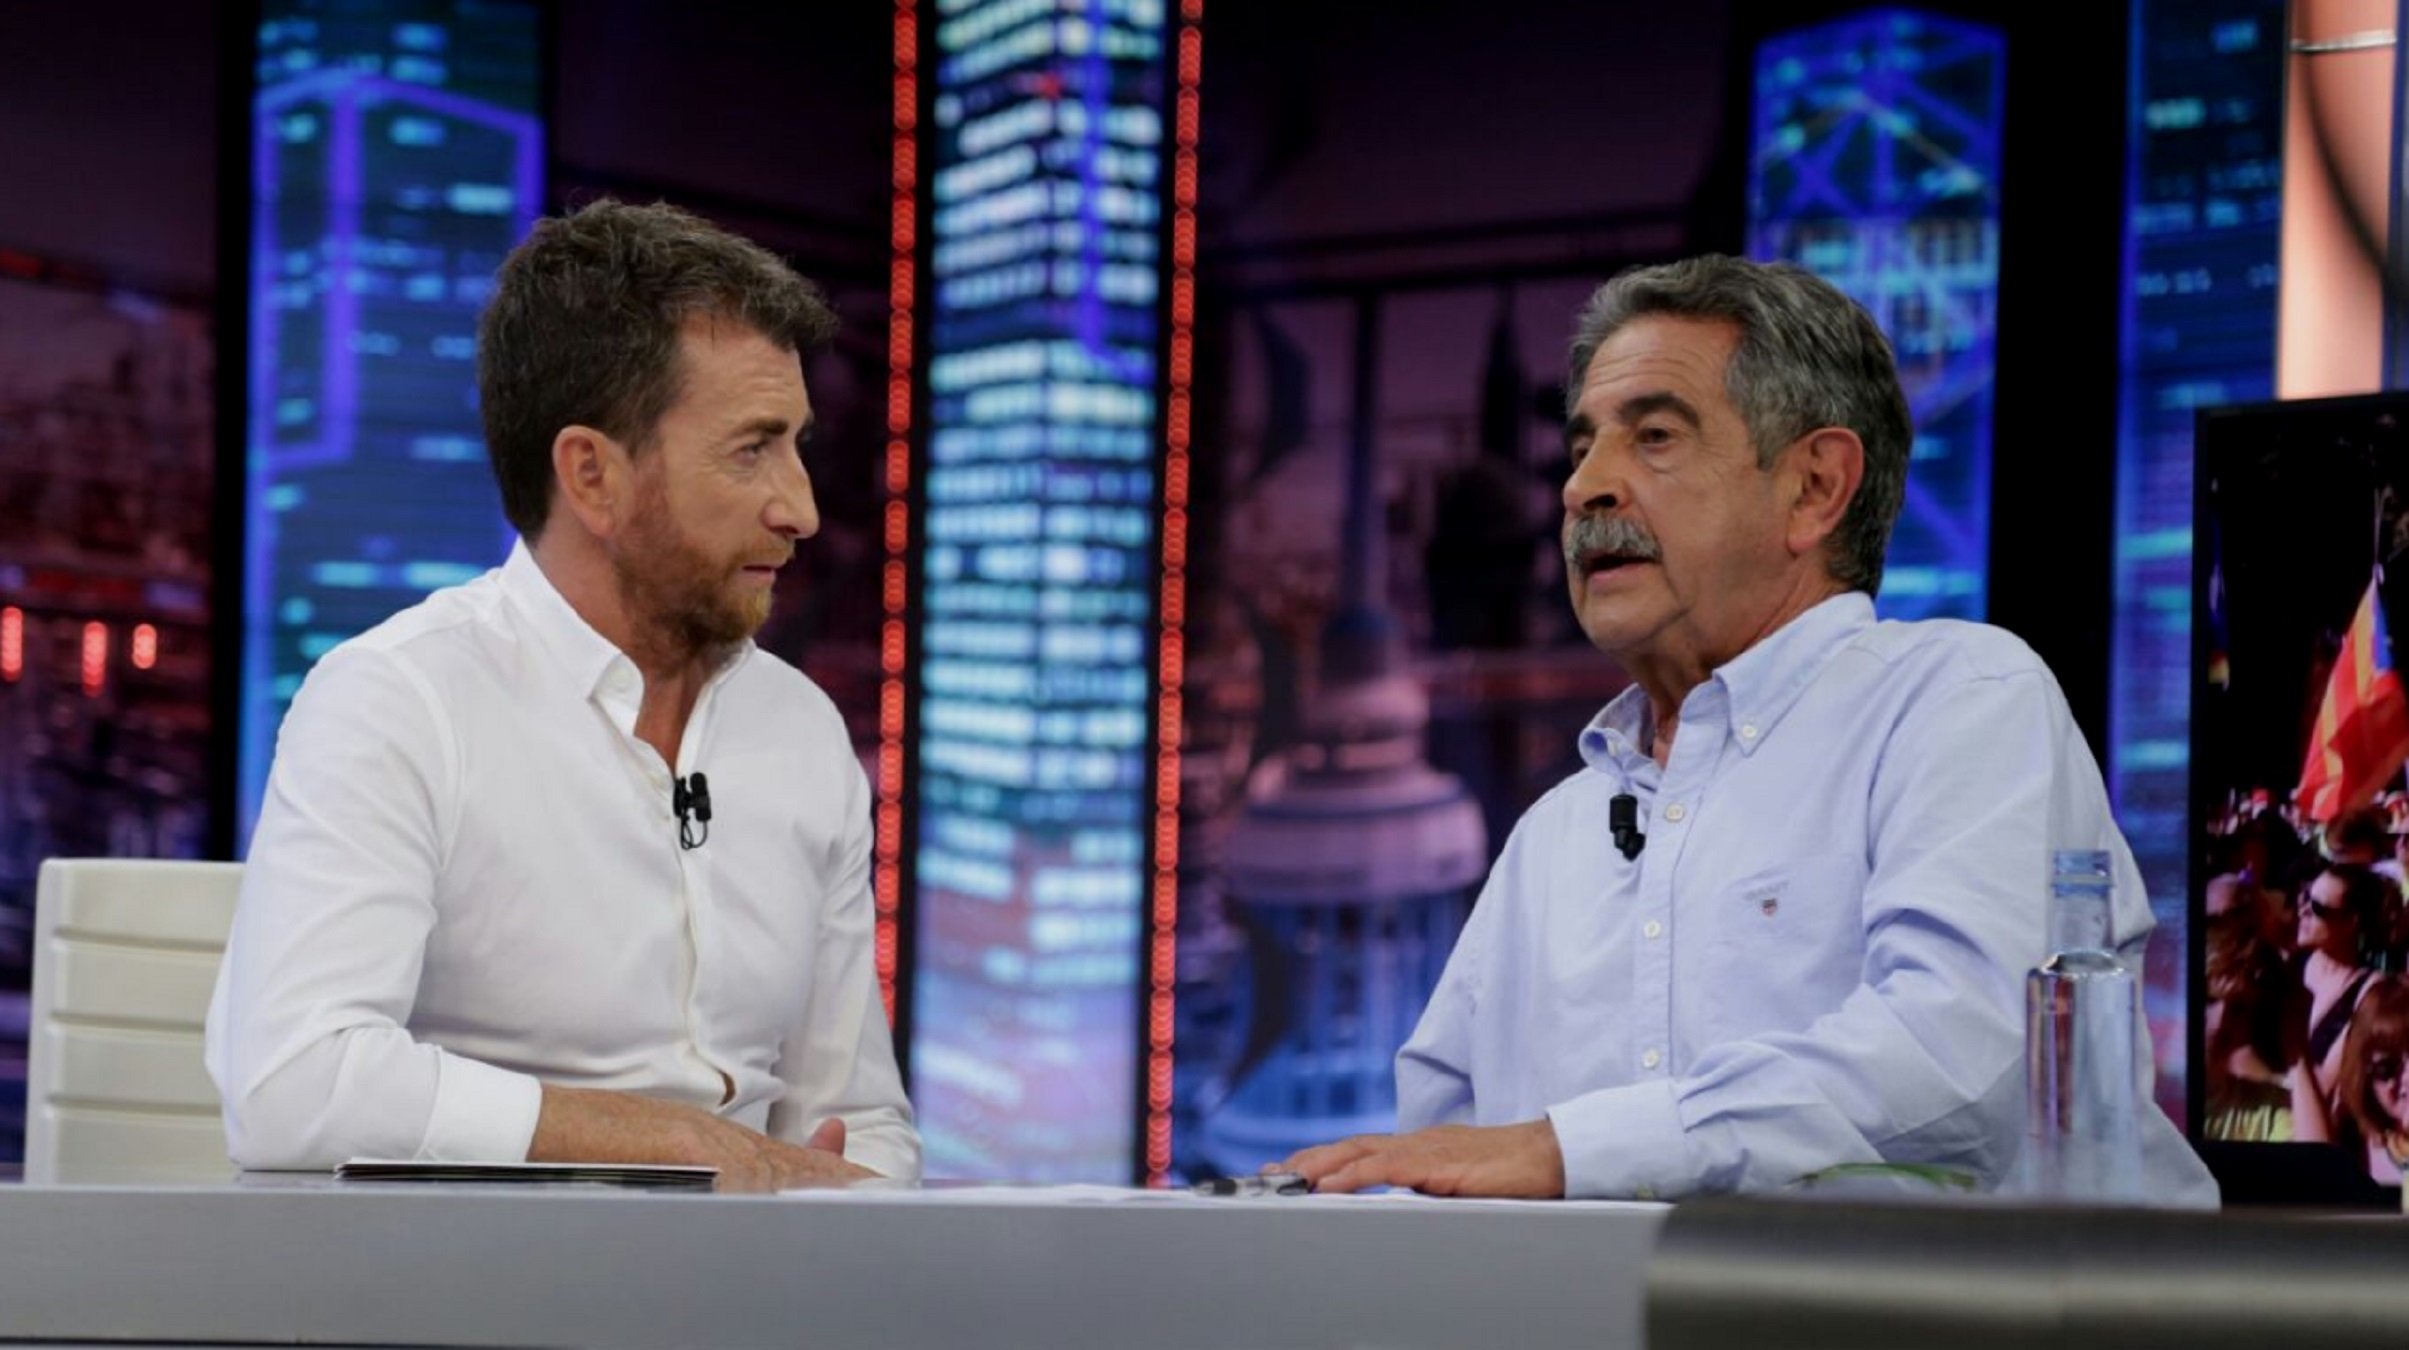 Vuelven a cargar contra TV3 en 'El Hormiguero': "Manipula al pueblo"